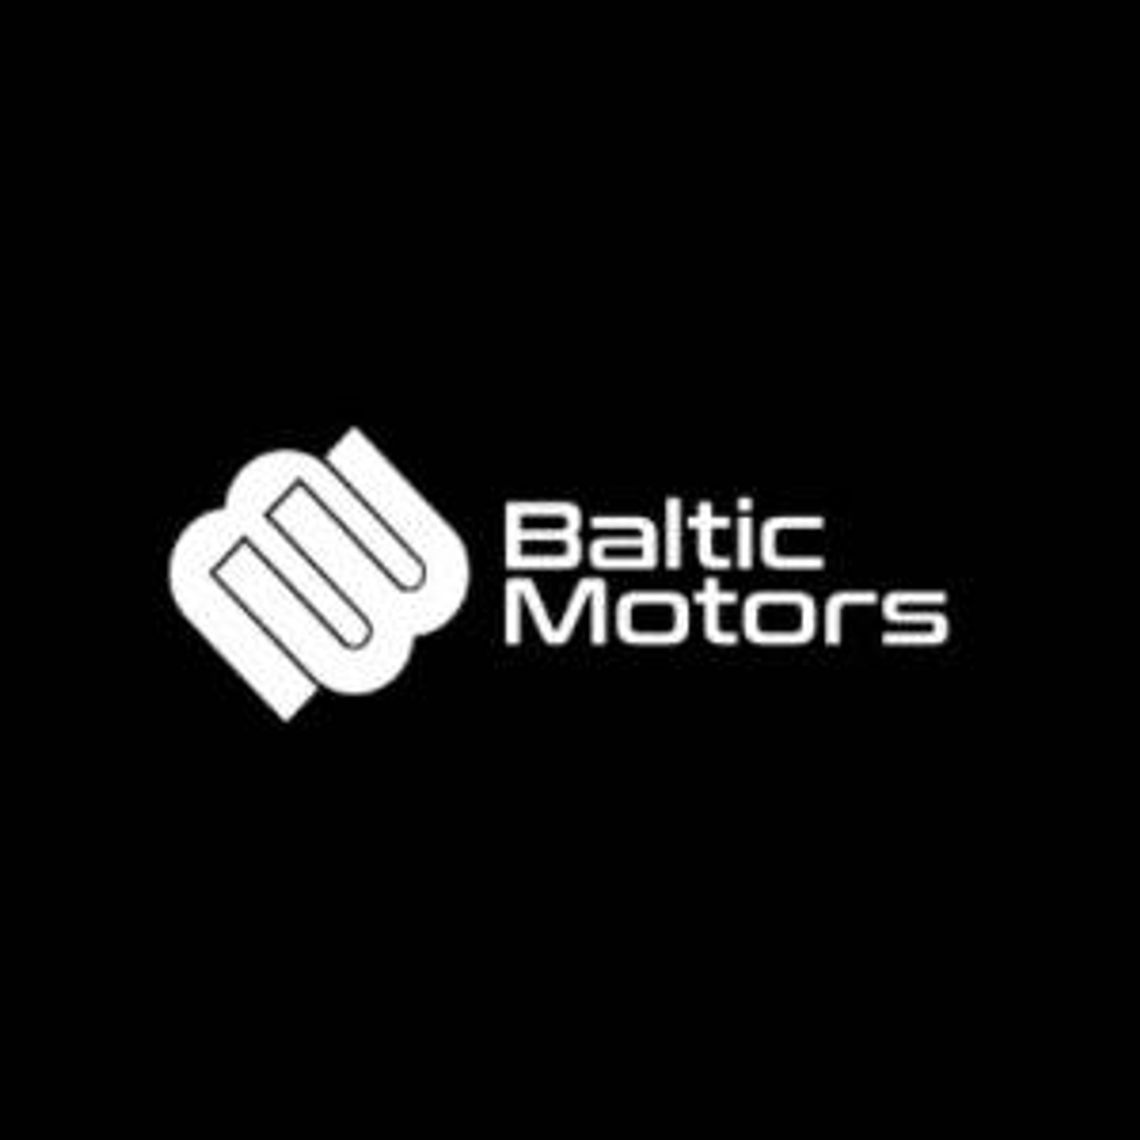 Autoryzowany dealer marek motocyklowych - Baltic Motors